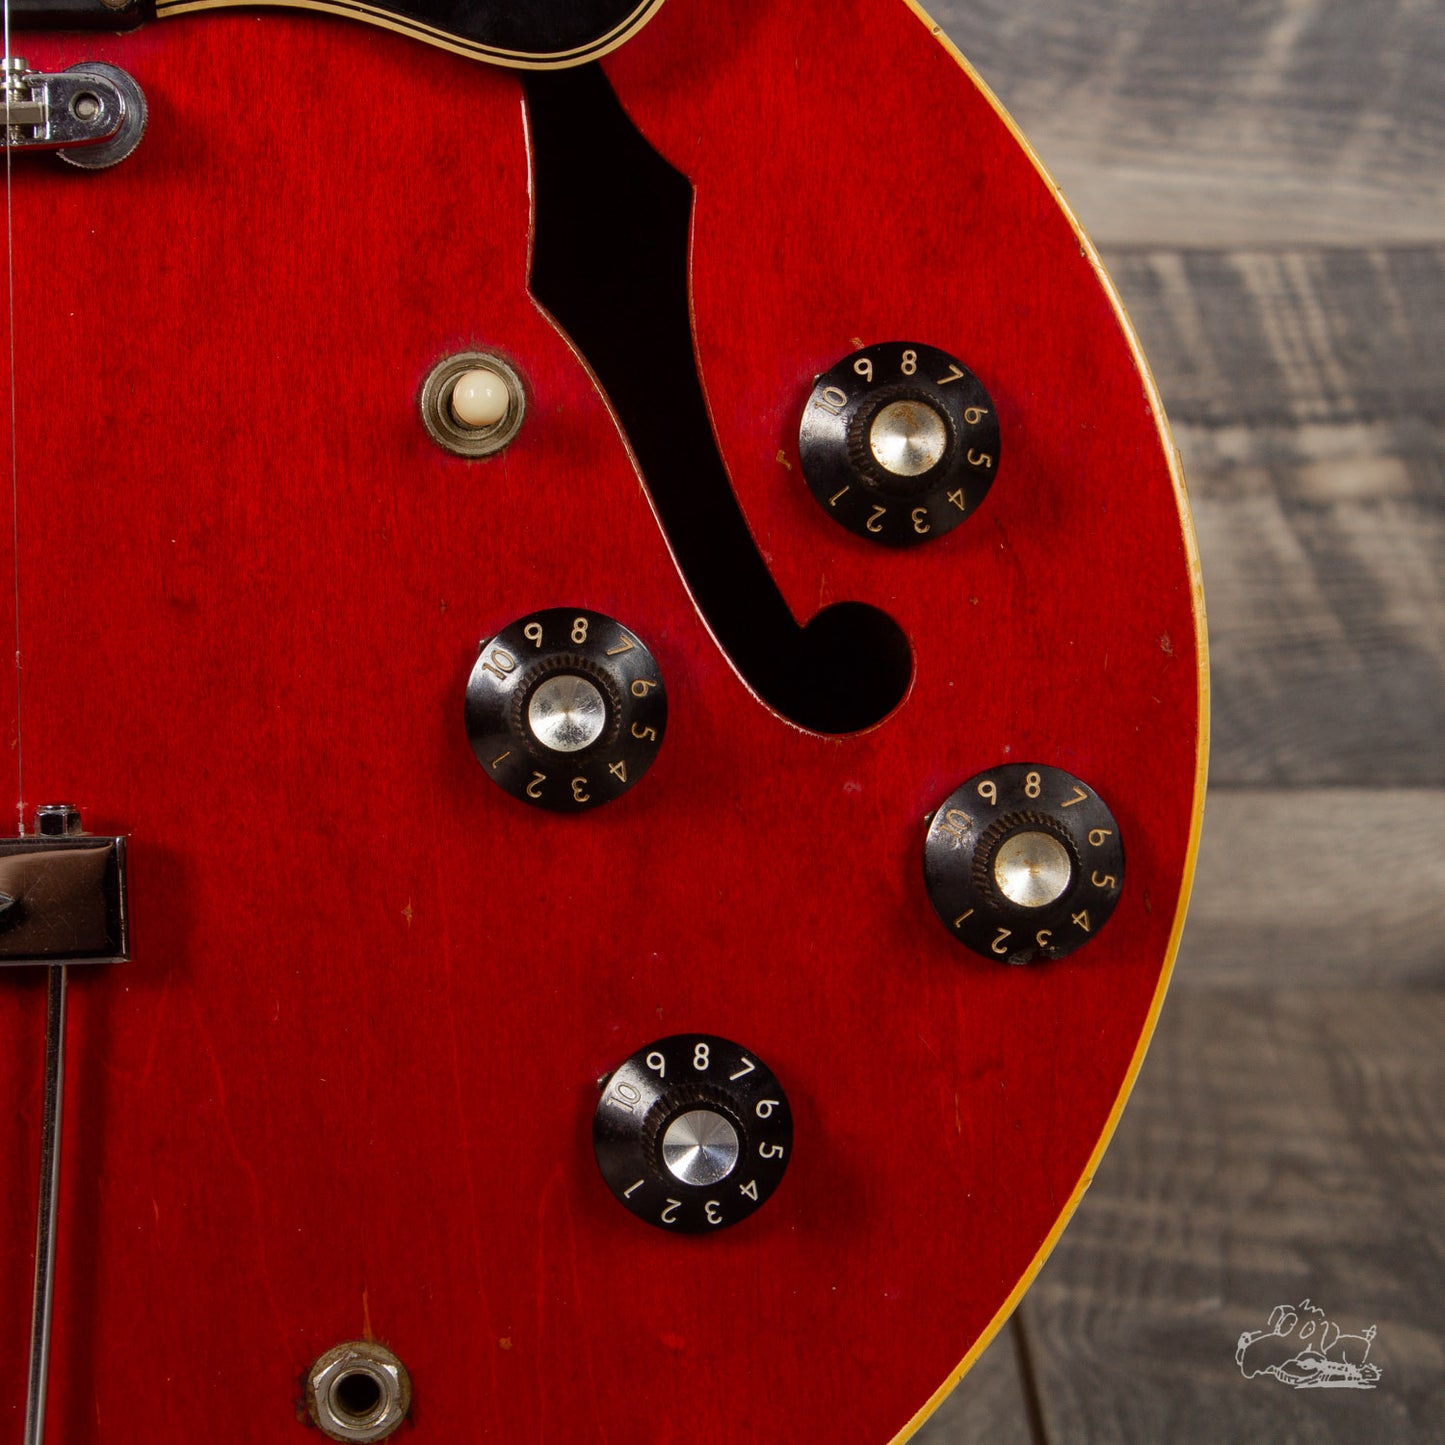 1968 Gibson ES-335